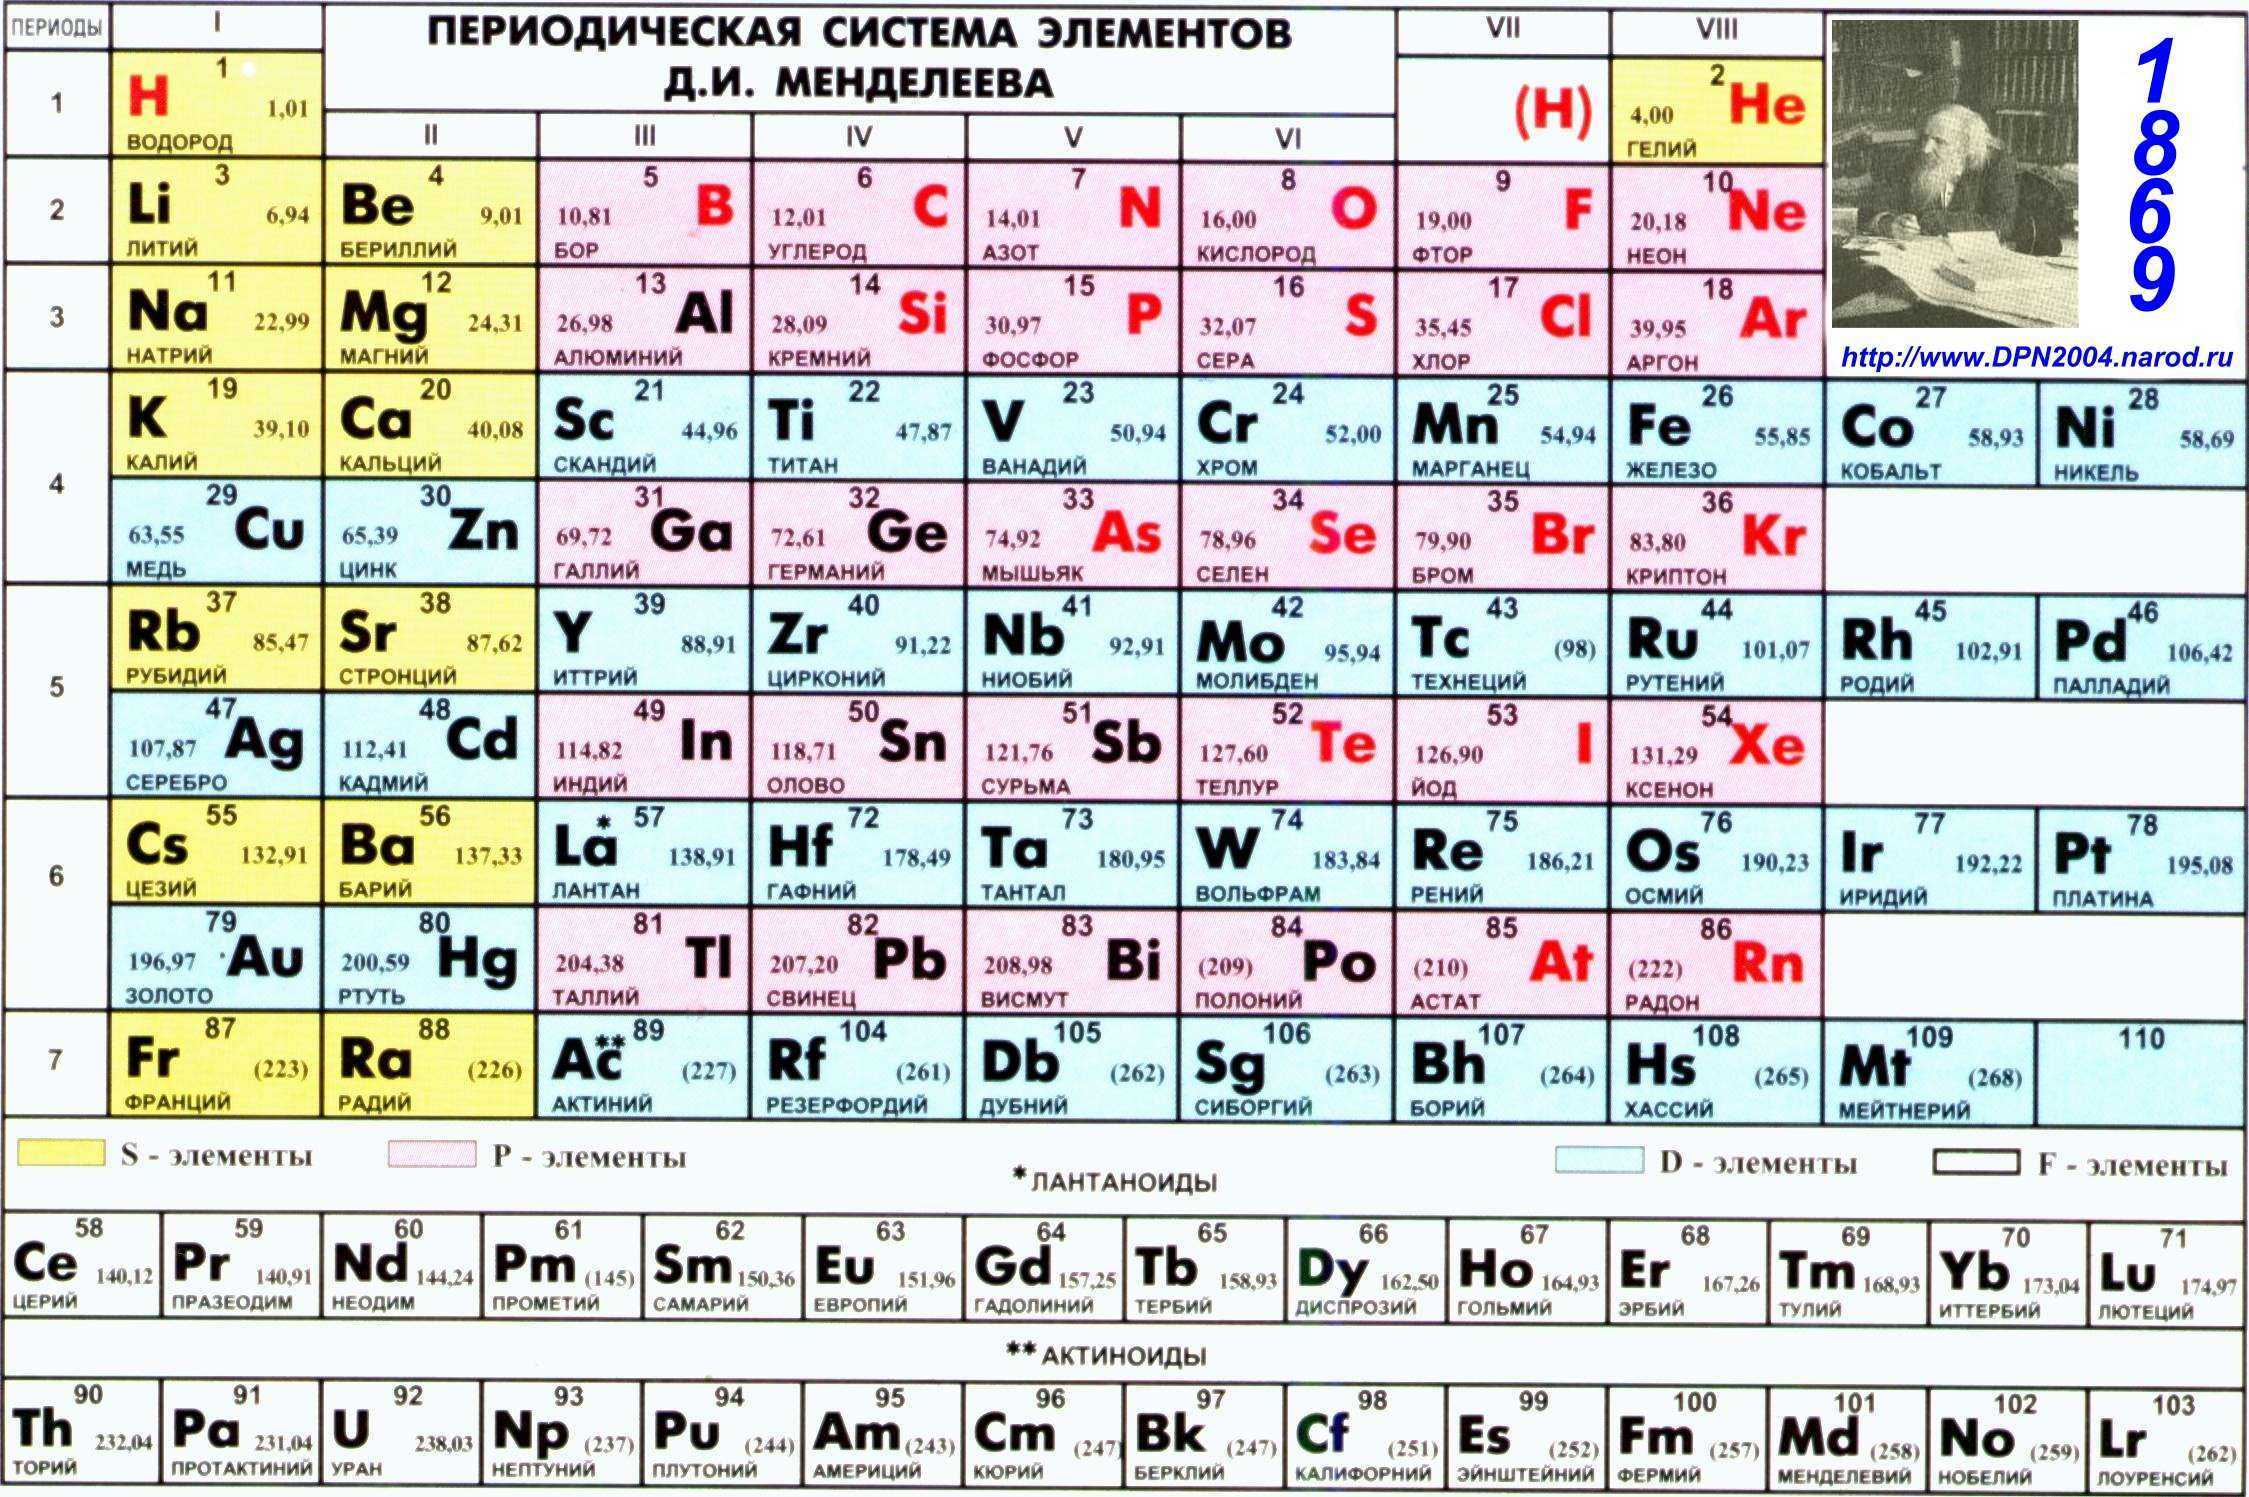 40 18 элемент. Периодическая таблица Менделеева. Показать периодическую таблицу Менделеева. Первые 20 элементов таблицы Менделеева.